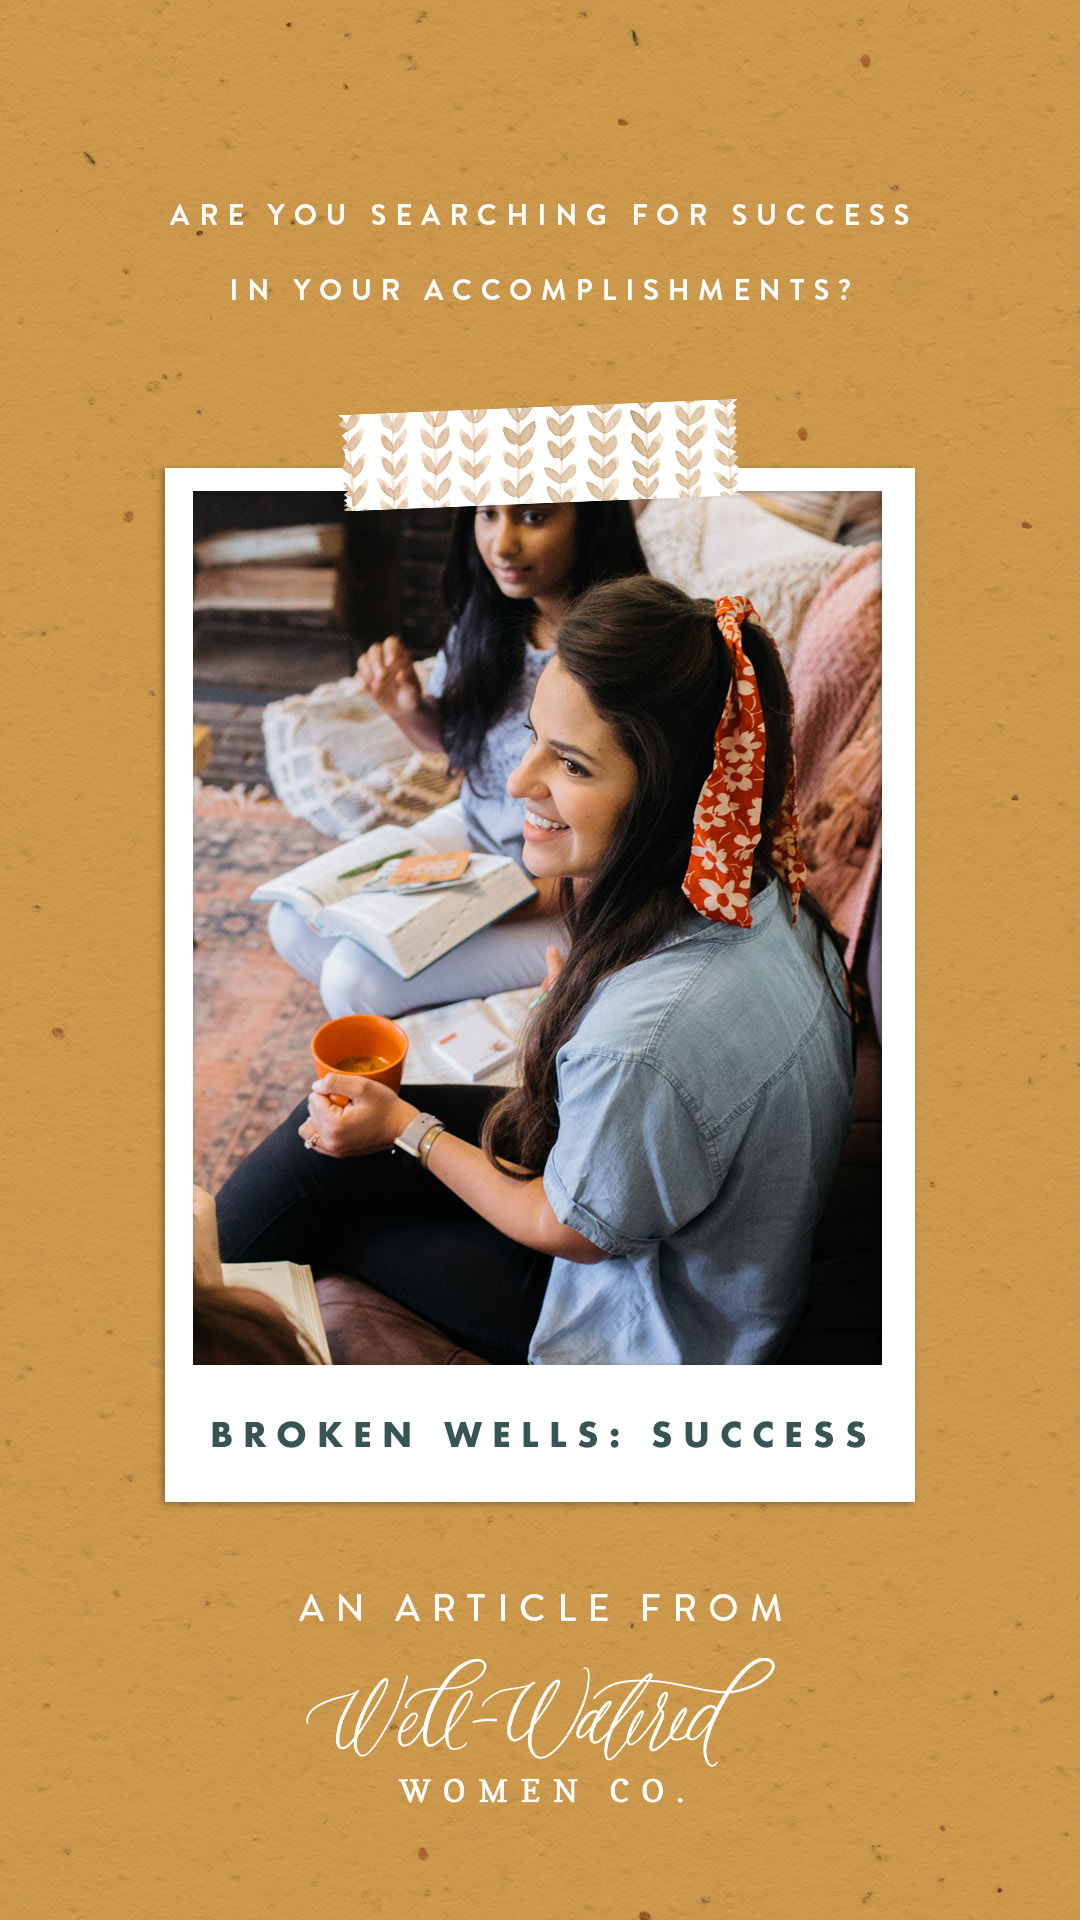 Broken Wells_Success-An Article by Well-Watered Women